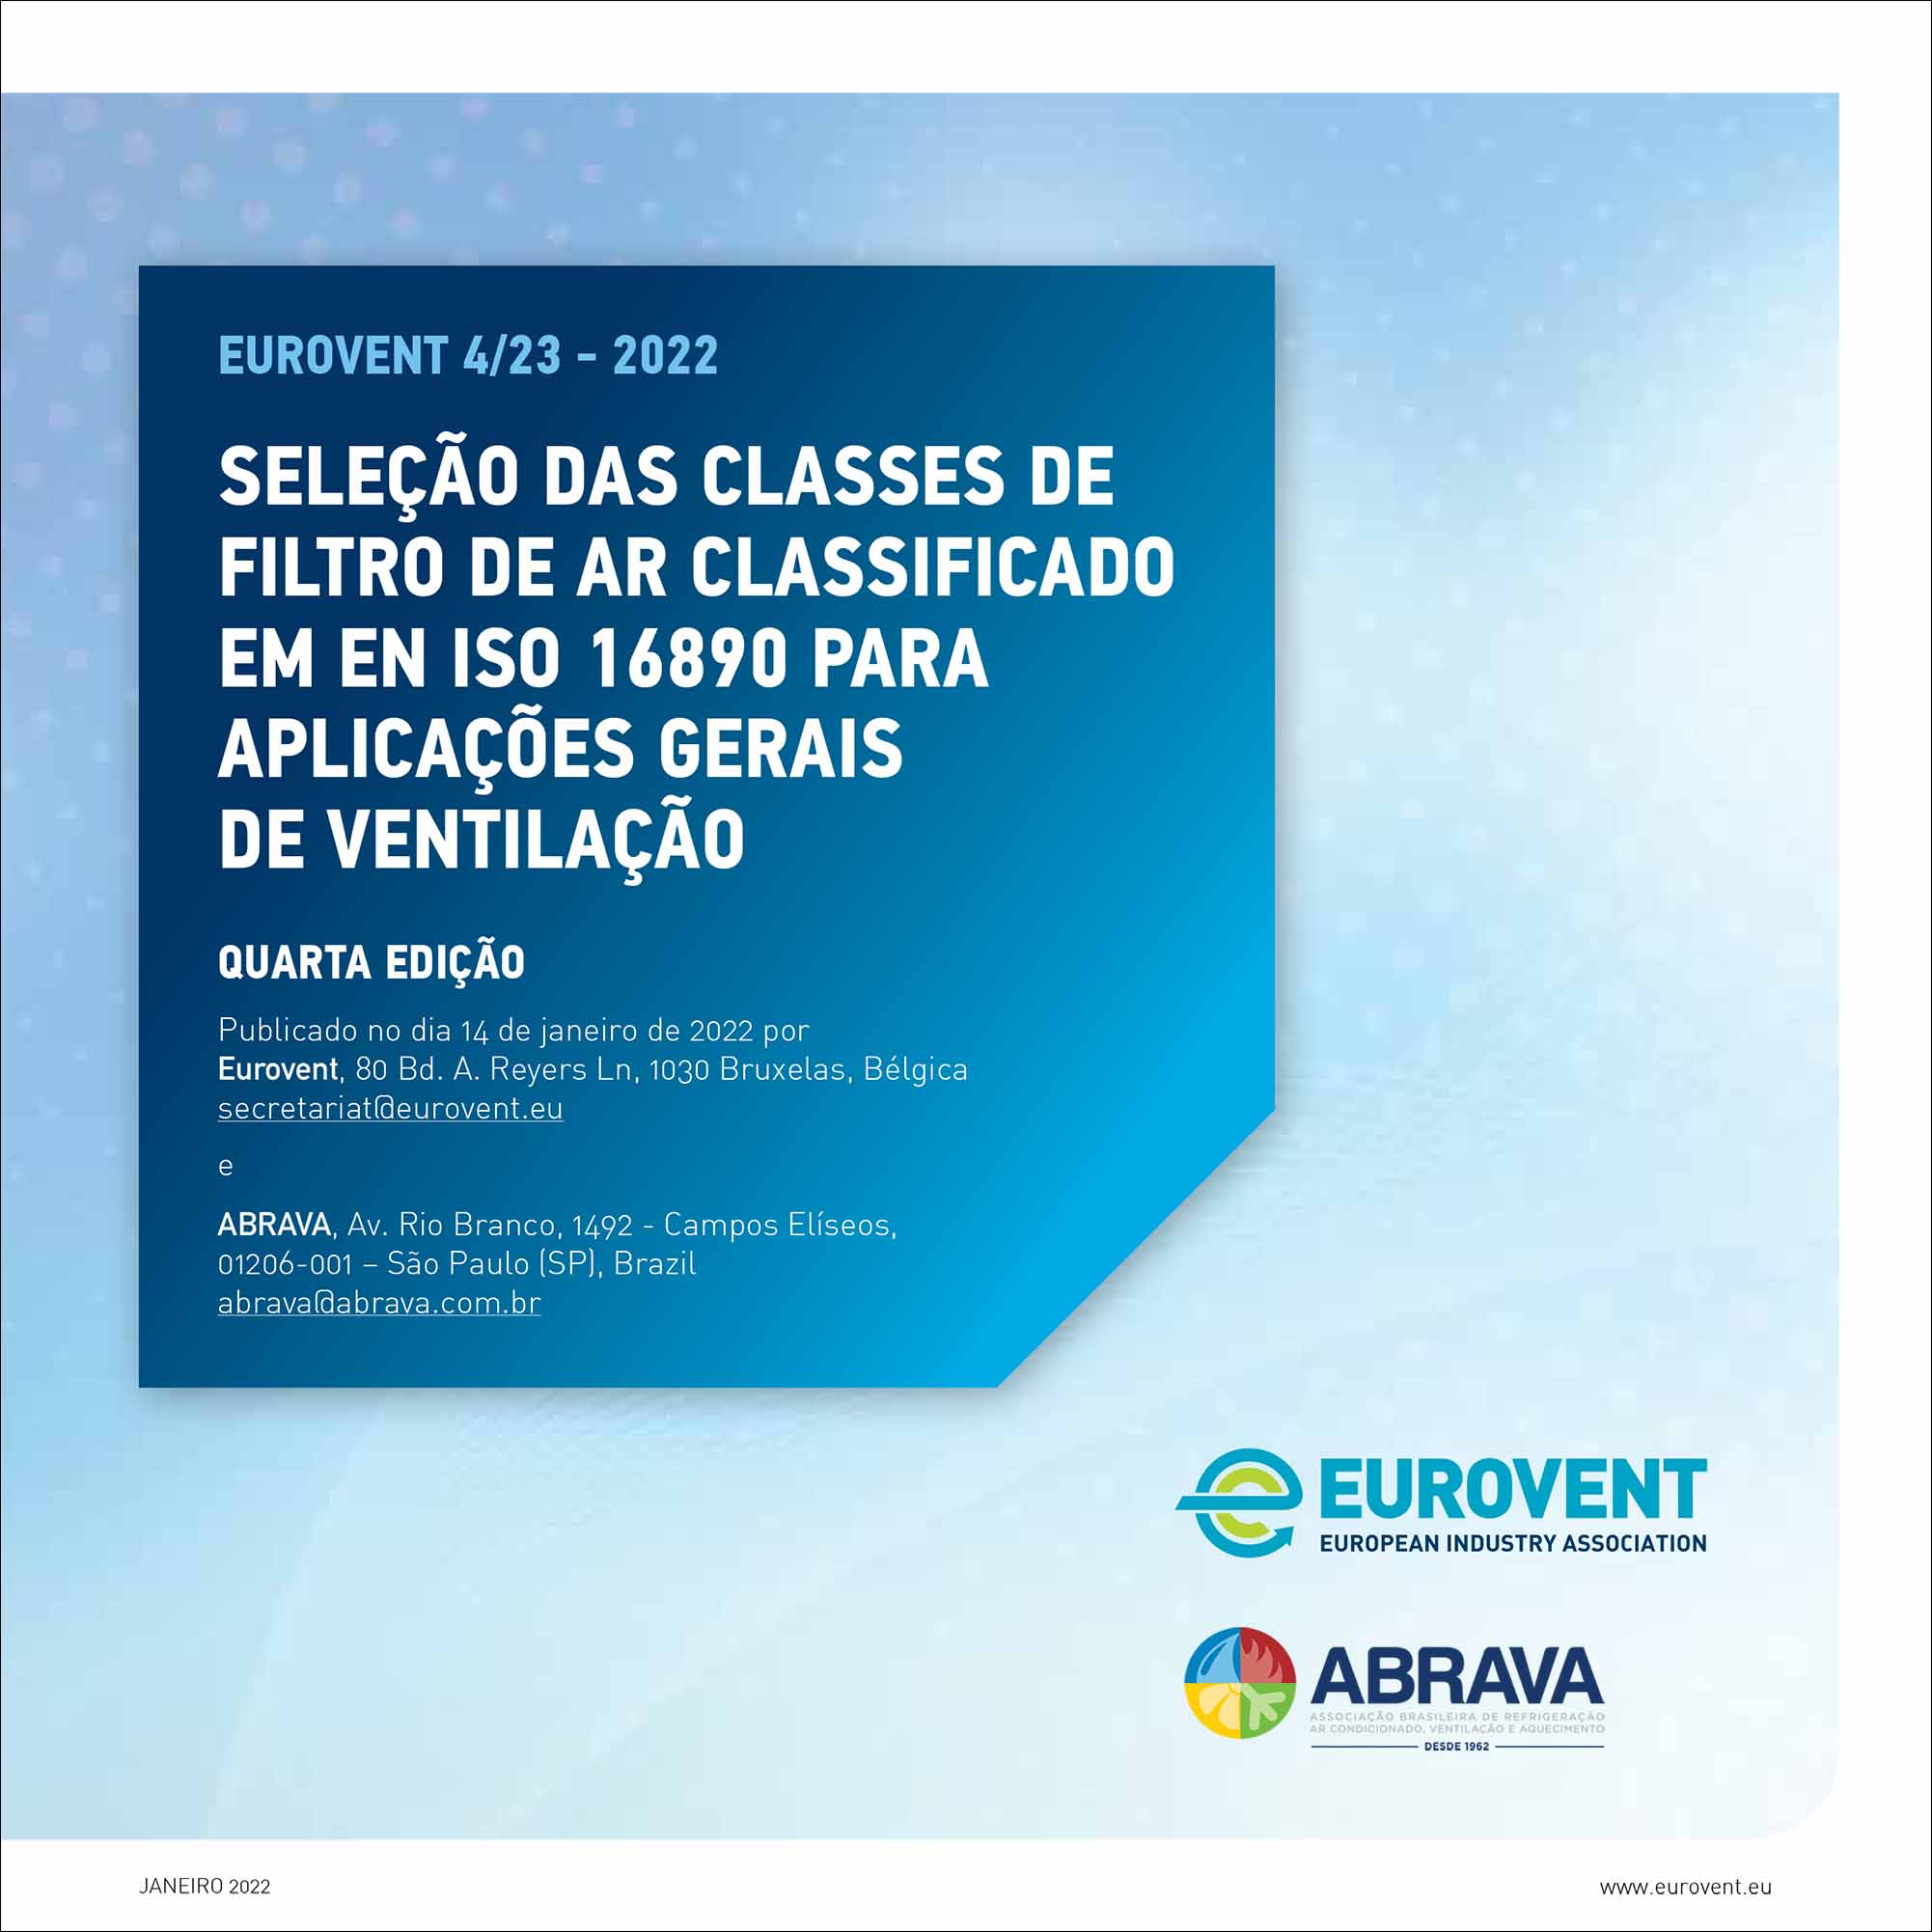 Eurovent 4/23 - 2022: Seleção das classes de filtro de ar classificado em en iso 16890 para aplicações gerais de ventilação - Quarta edição